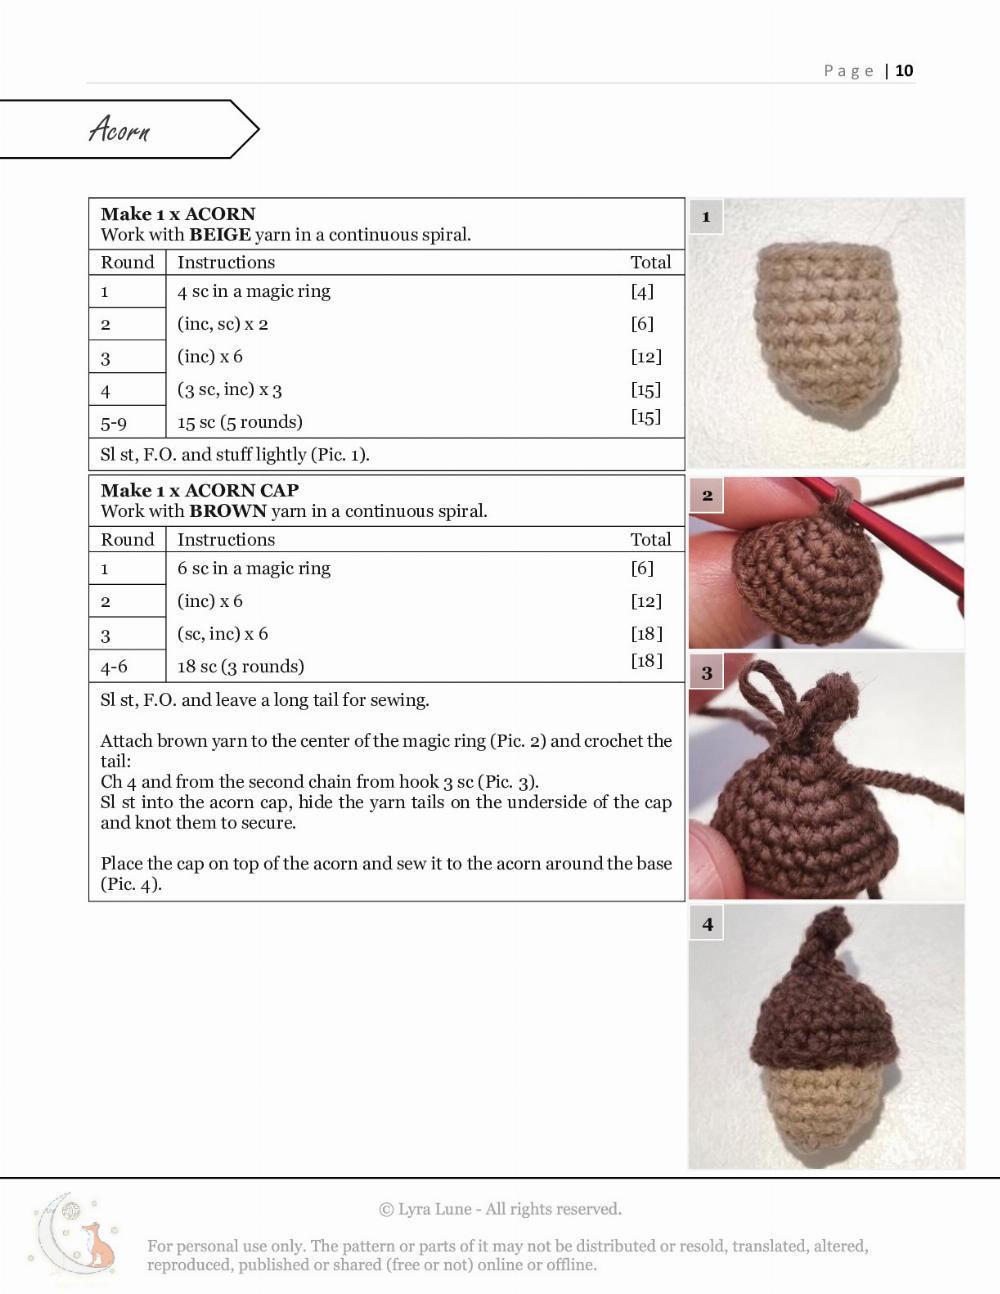 mushroom trio crochet pattern